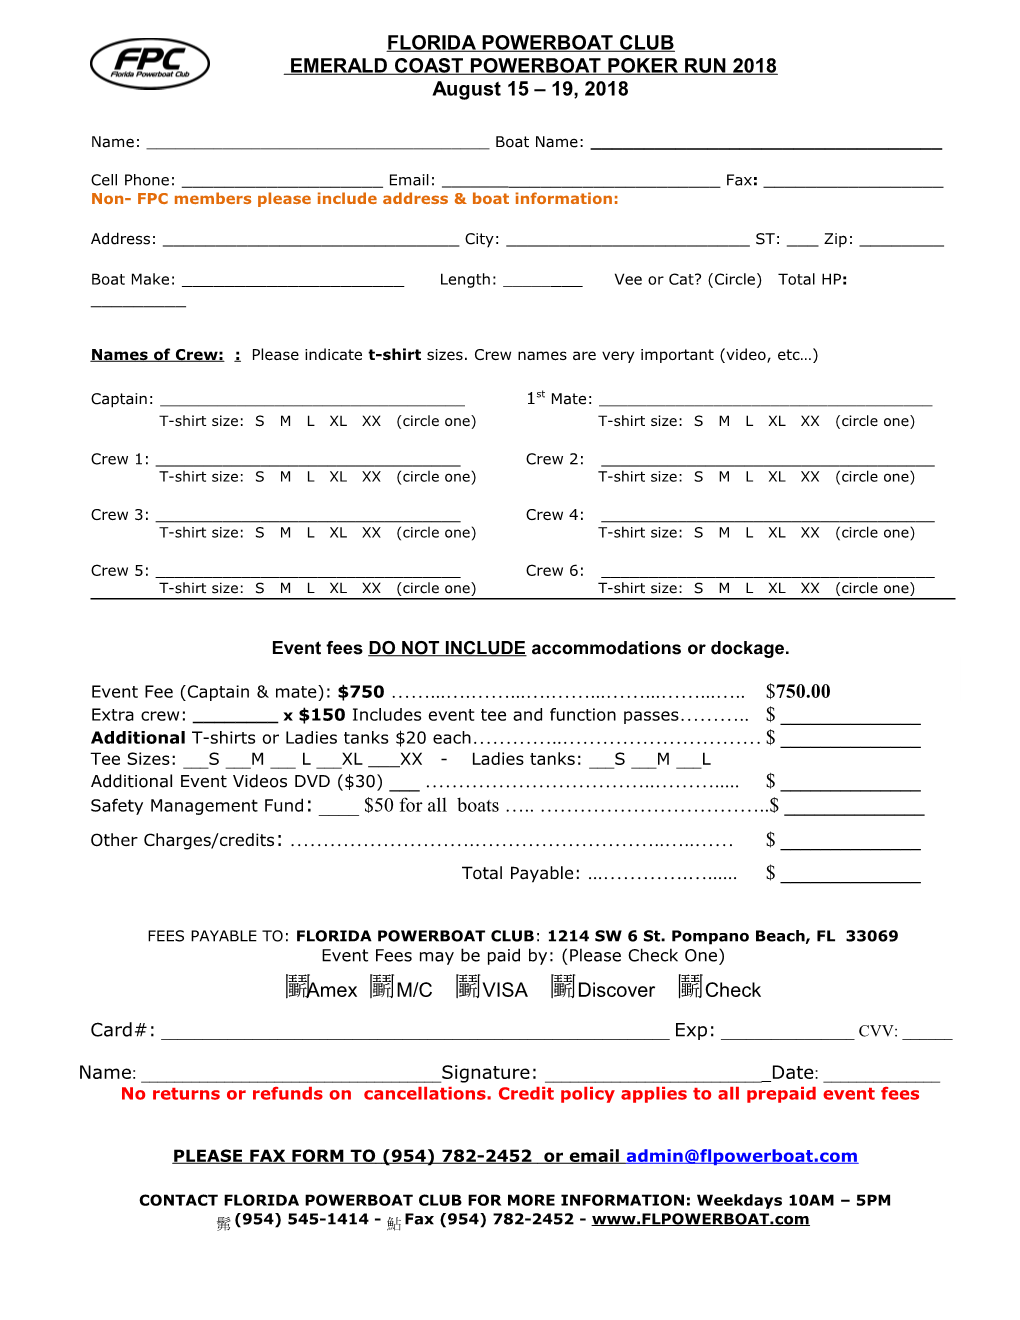 Florida Powerboat Club- Key West Poker Run 2003 Booking Form